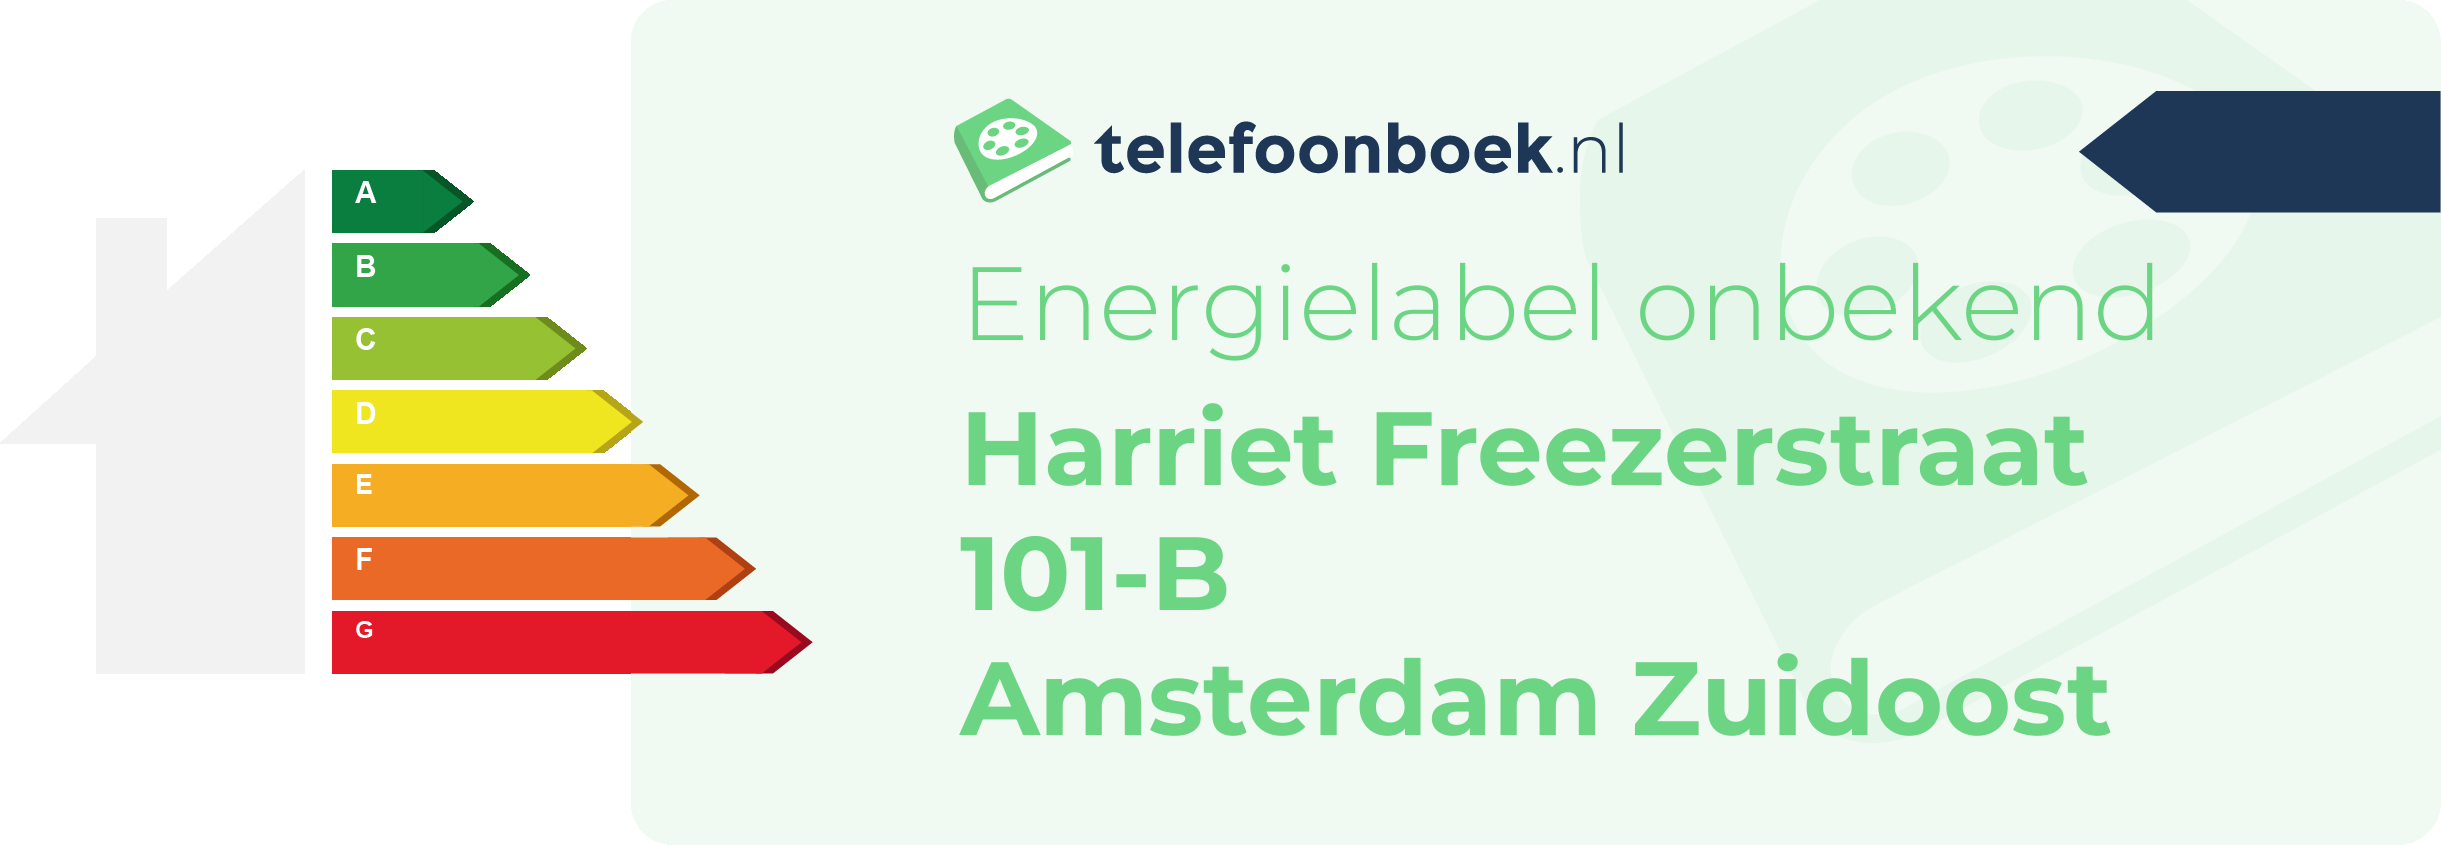 Energielabel Harriet Freezerstraat 101-B Amsterdam Zuidoost